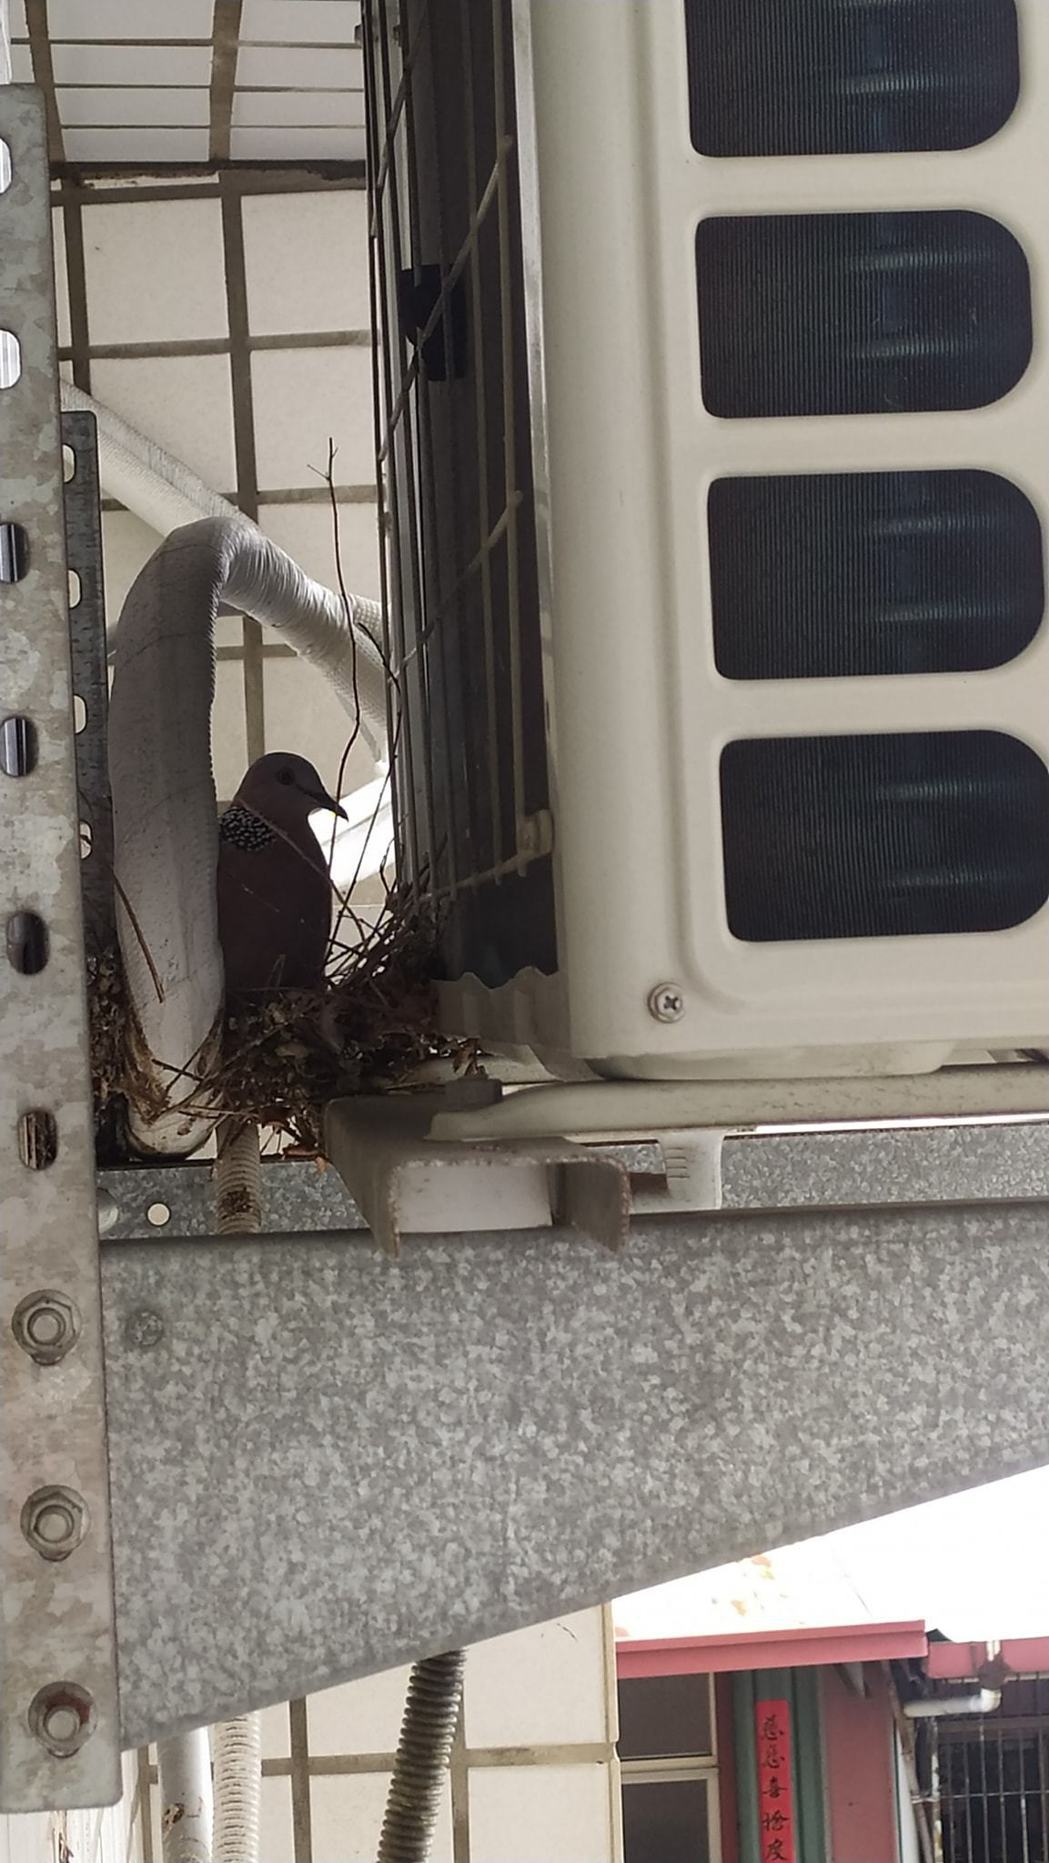 網友在冷氣機後方發現鳥類築巢。圖擷自爆廢公社